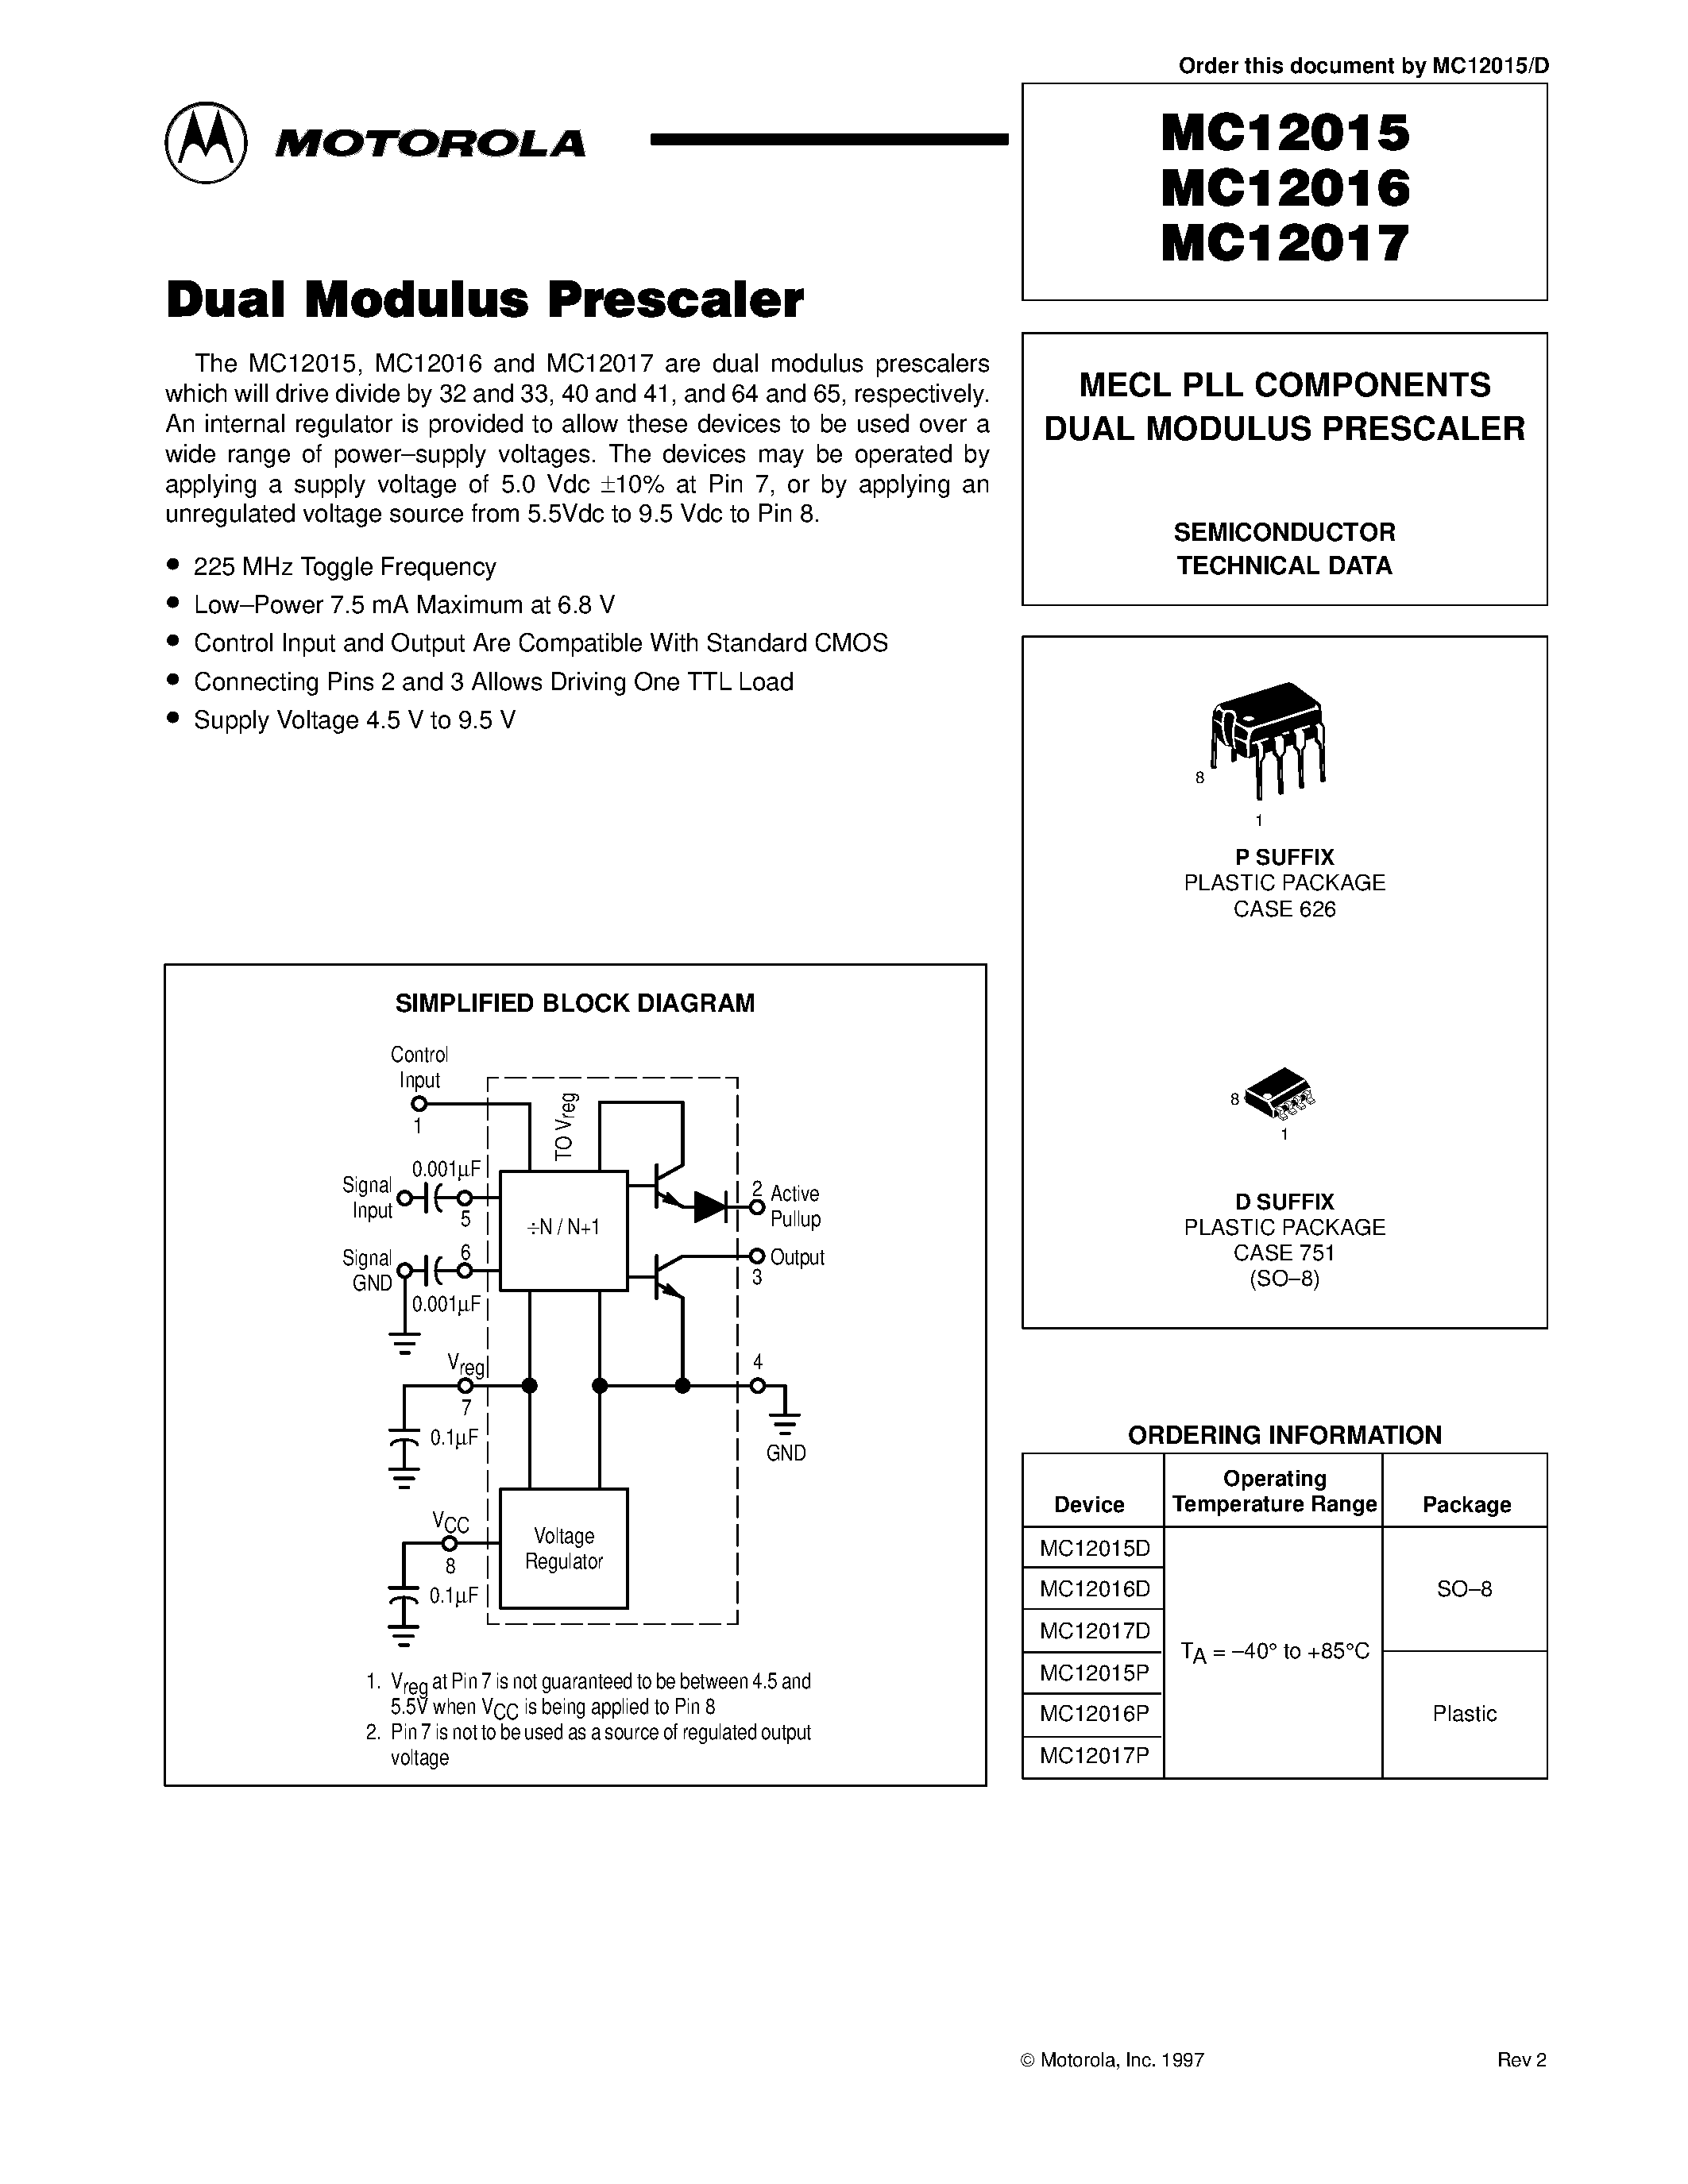 Datasheet MC12015D - MECL PLL COMPONENTS DUAL MODULUS PRESCALER page 1